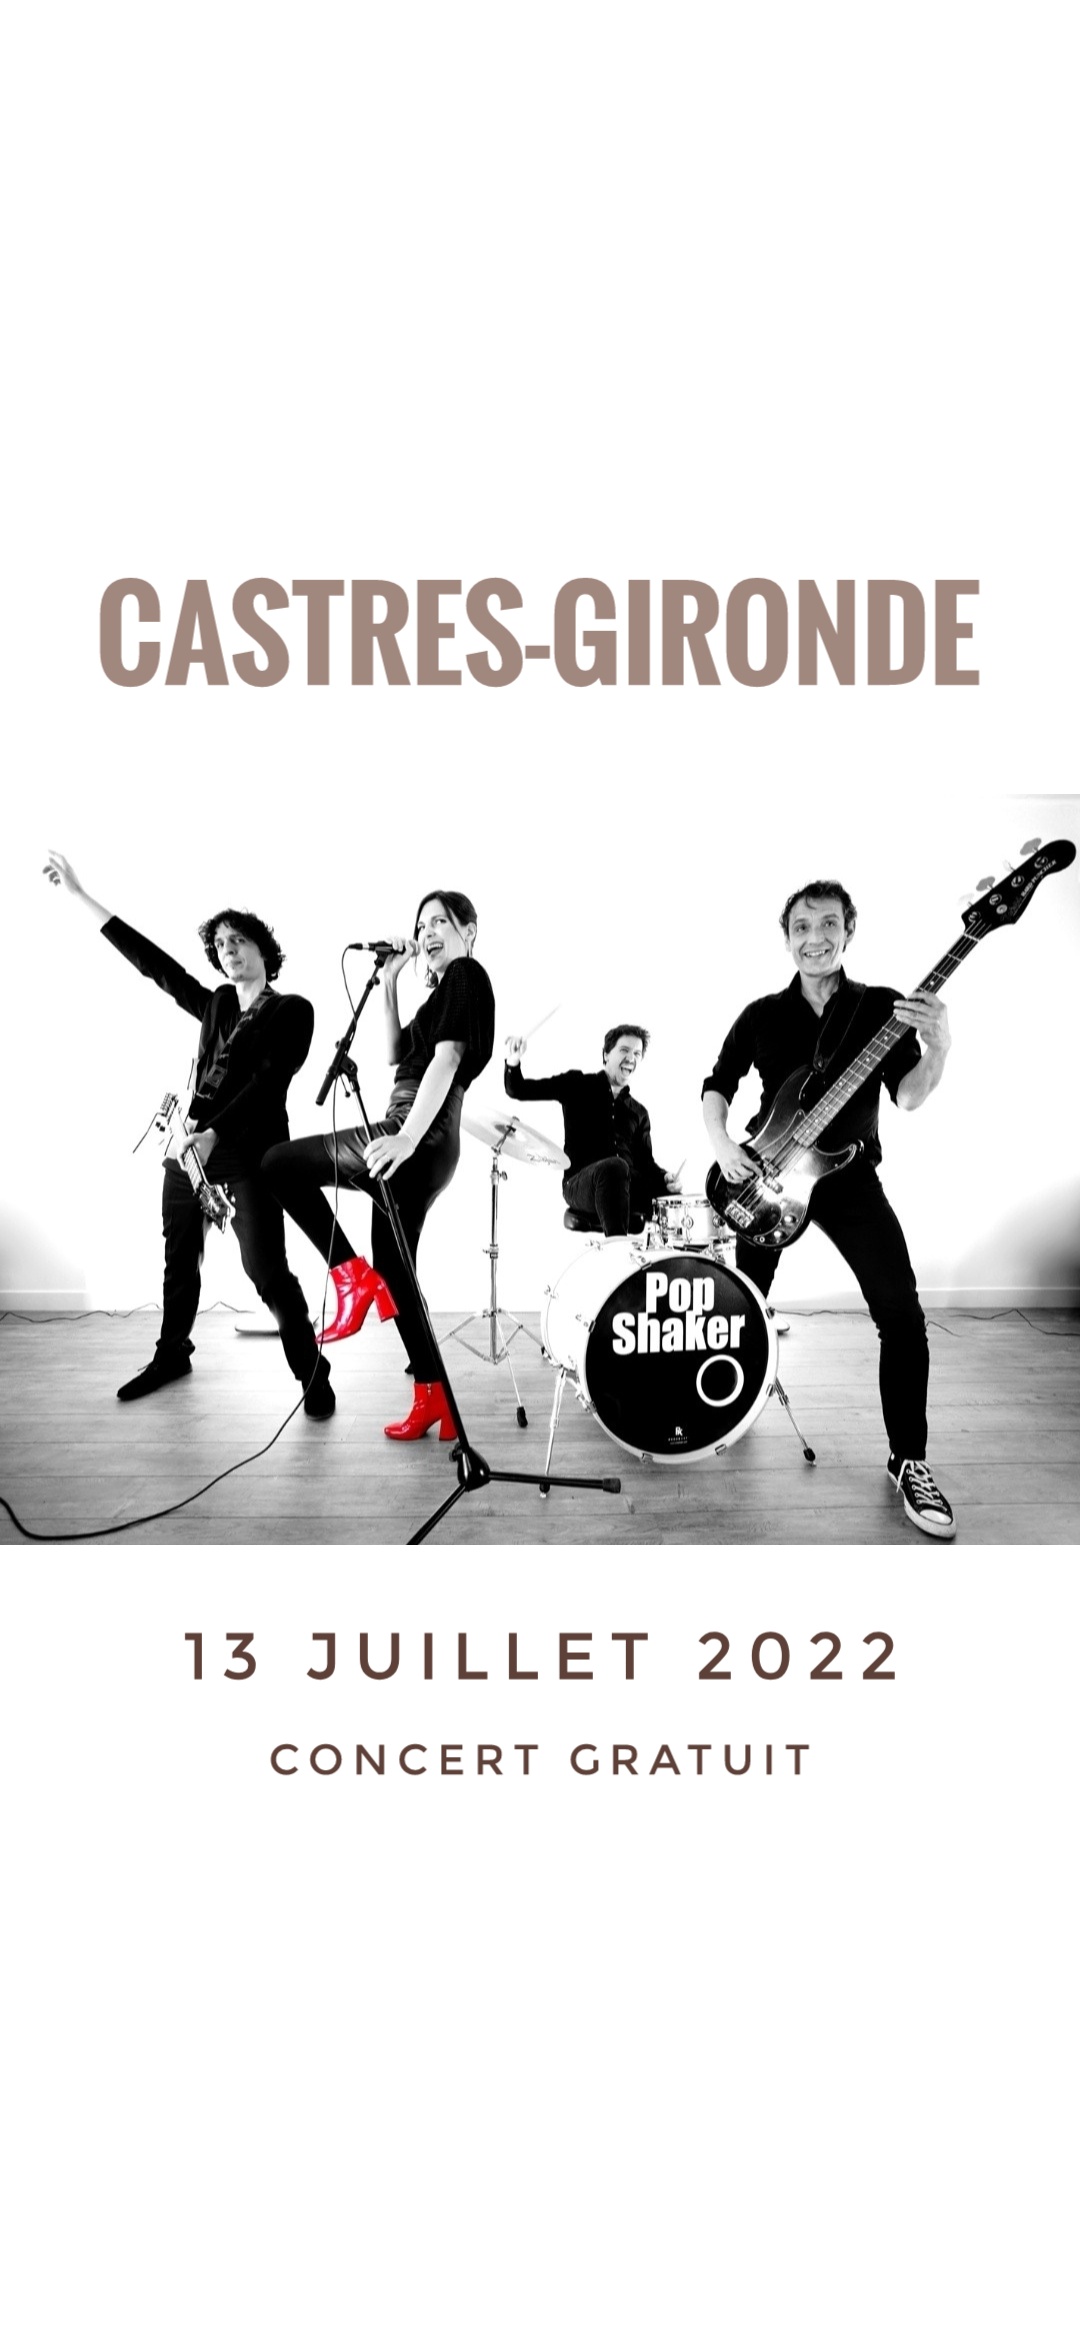 Concert Pop Shaker 13 juillet - Castres-Gironde